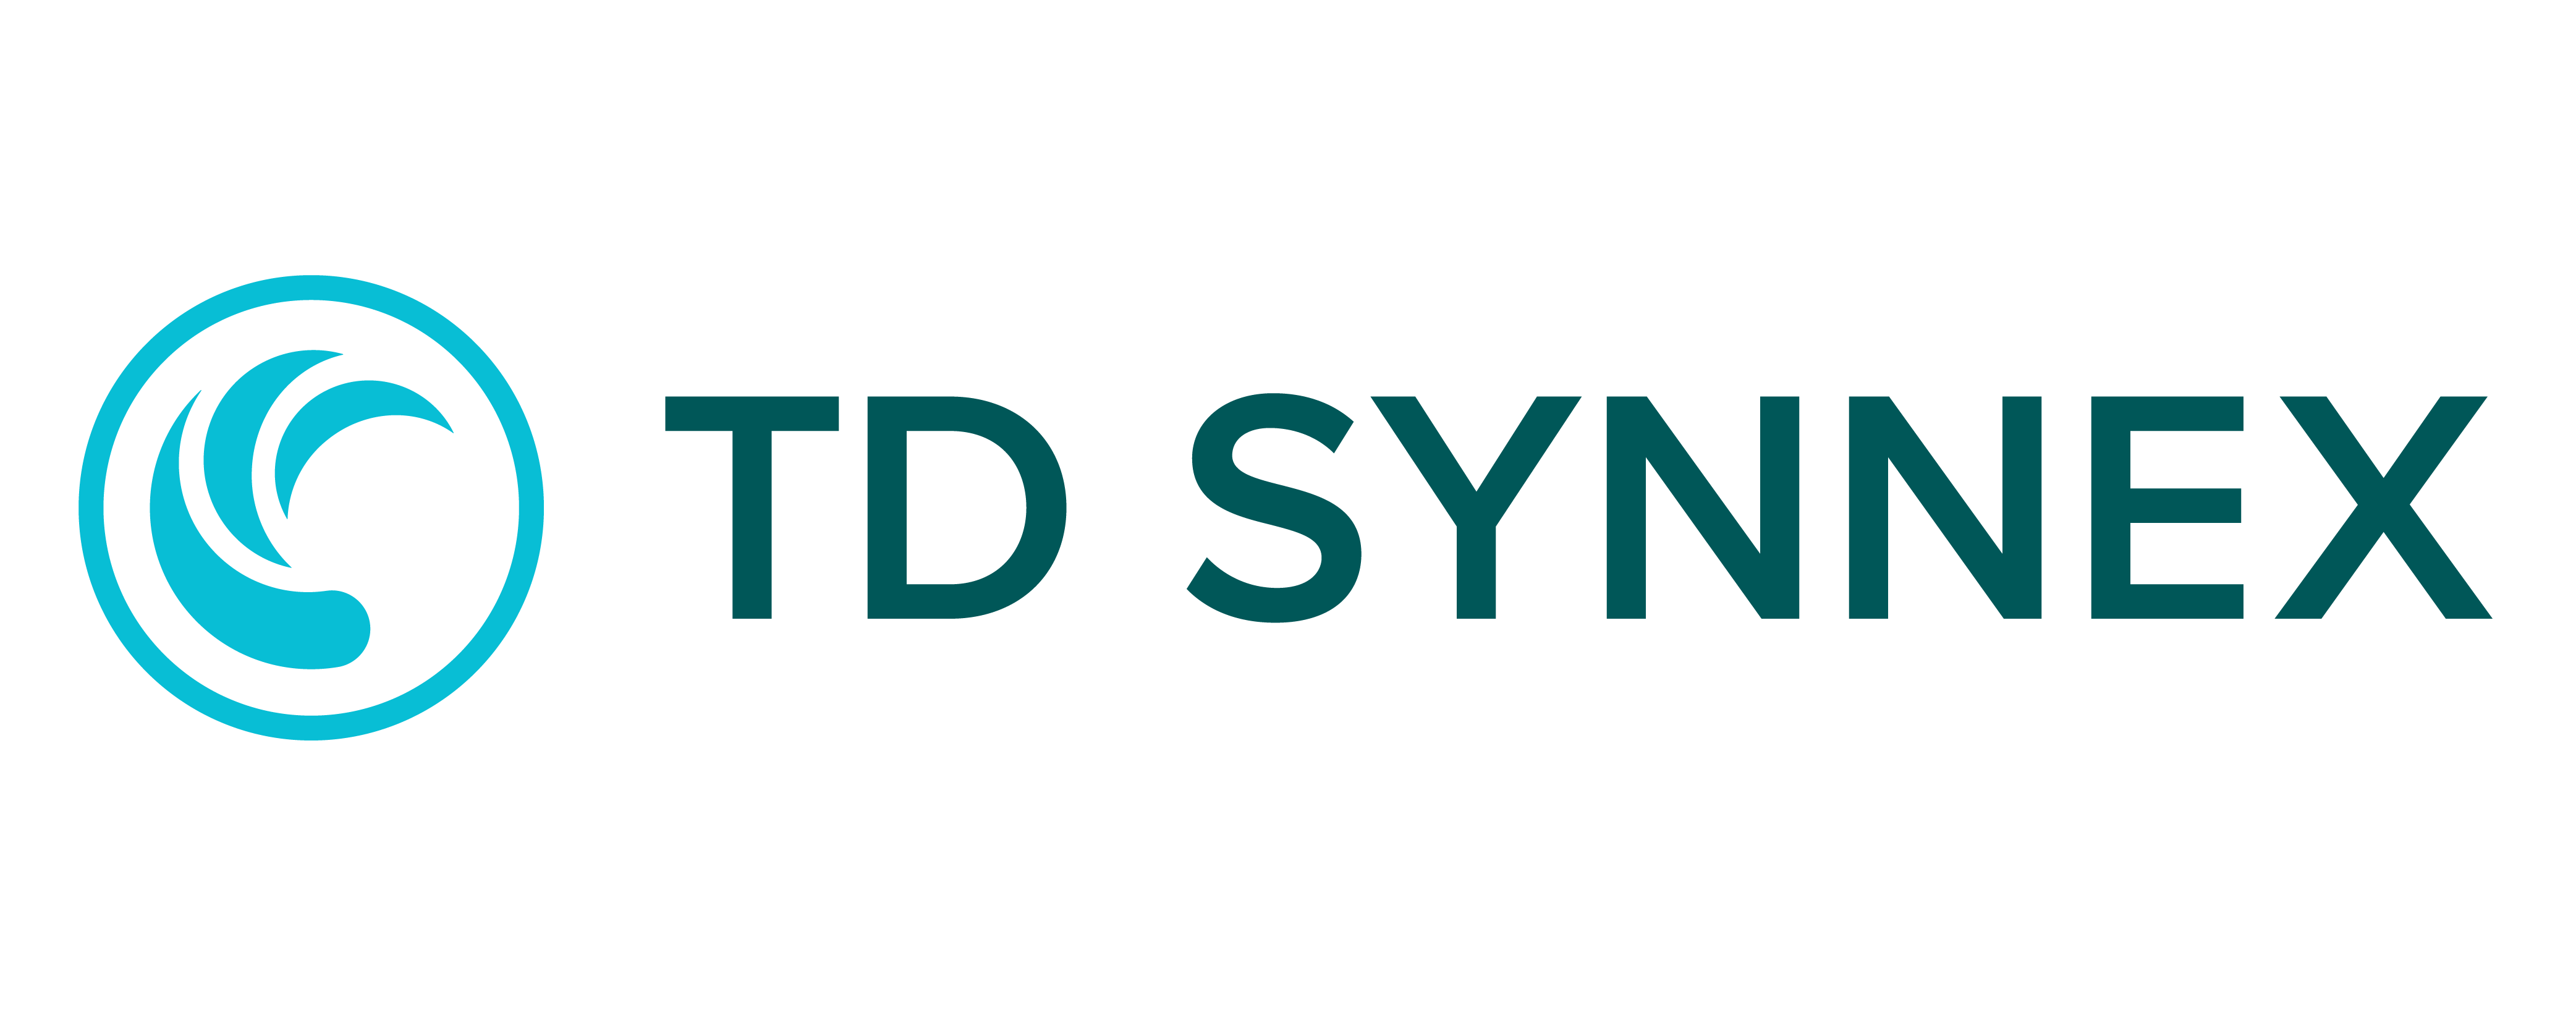 TD_SYNNEX_Logo